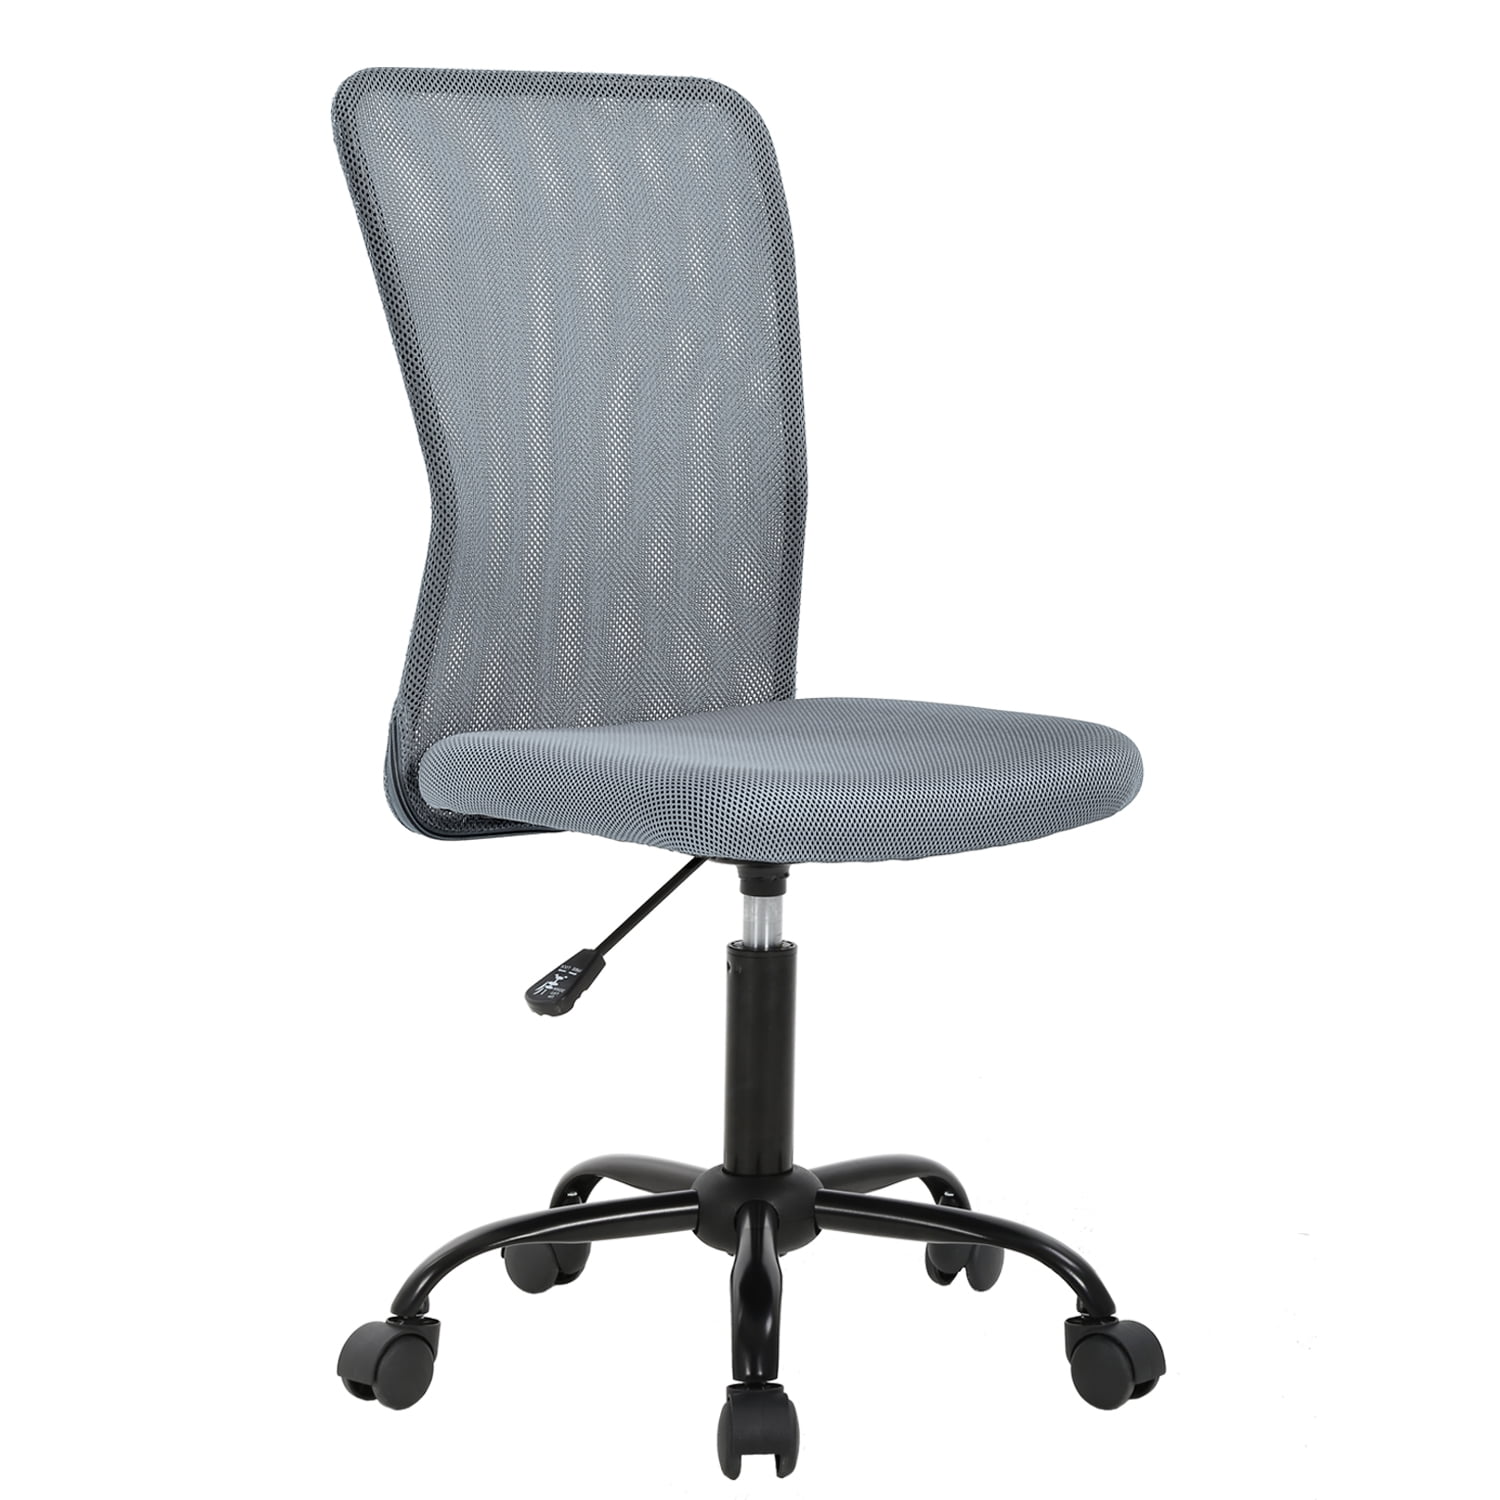 mesh office chair ergonomic cheap desk chair computer adjustable swivel  rolling chair lumbar support for womenmen grey  walmart